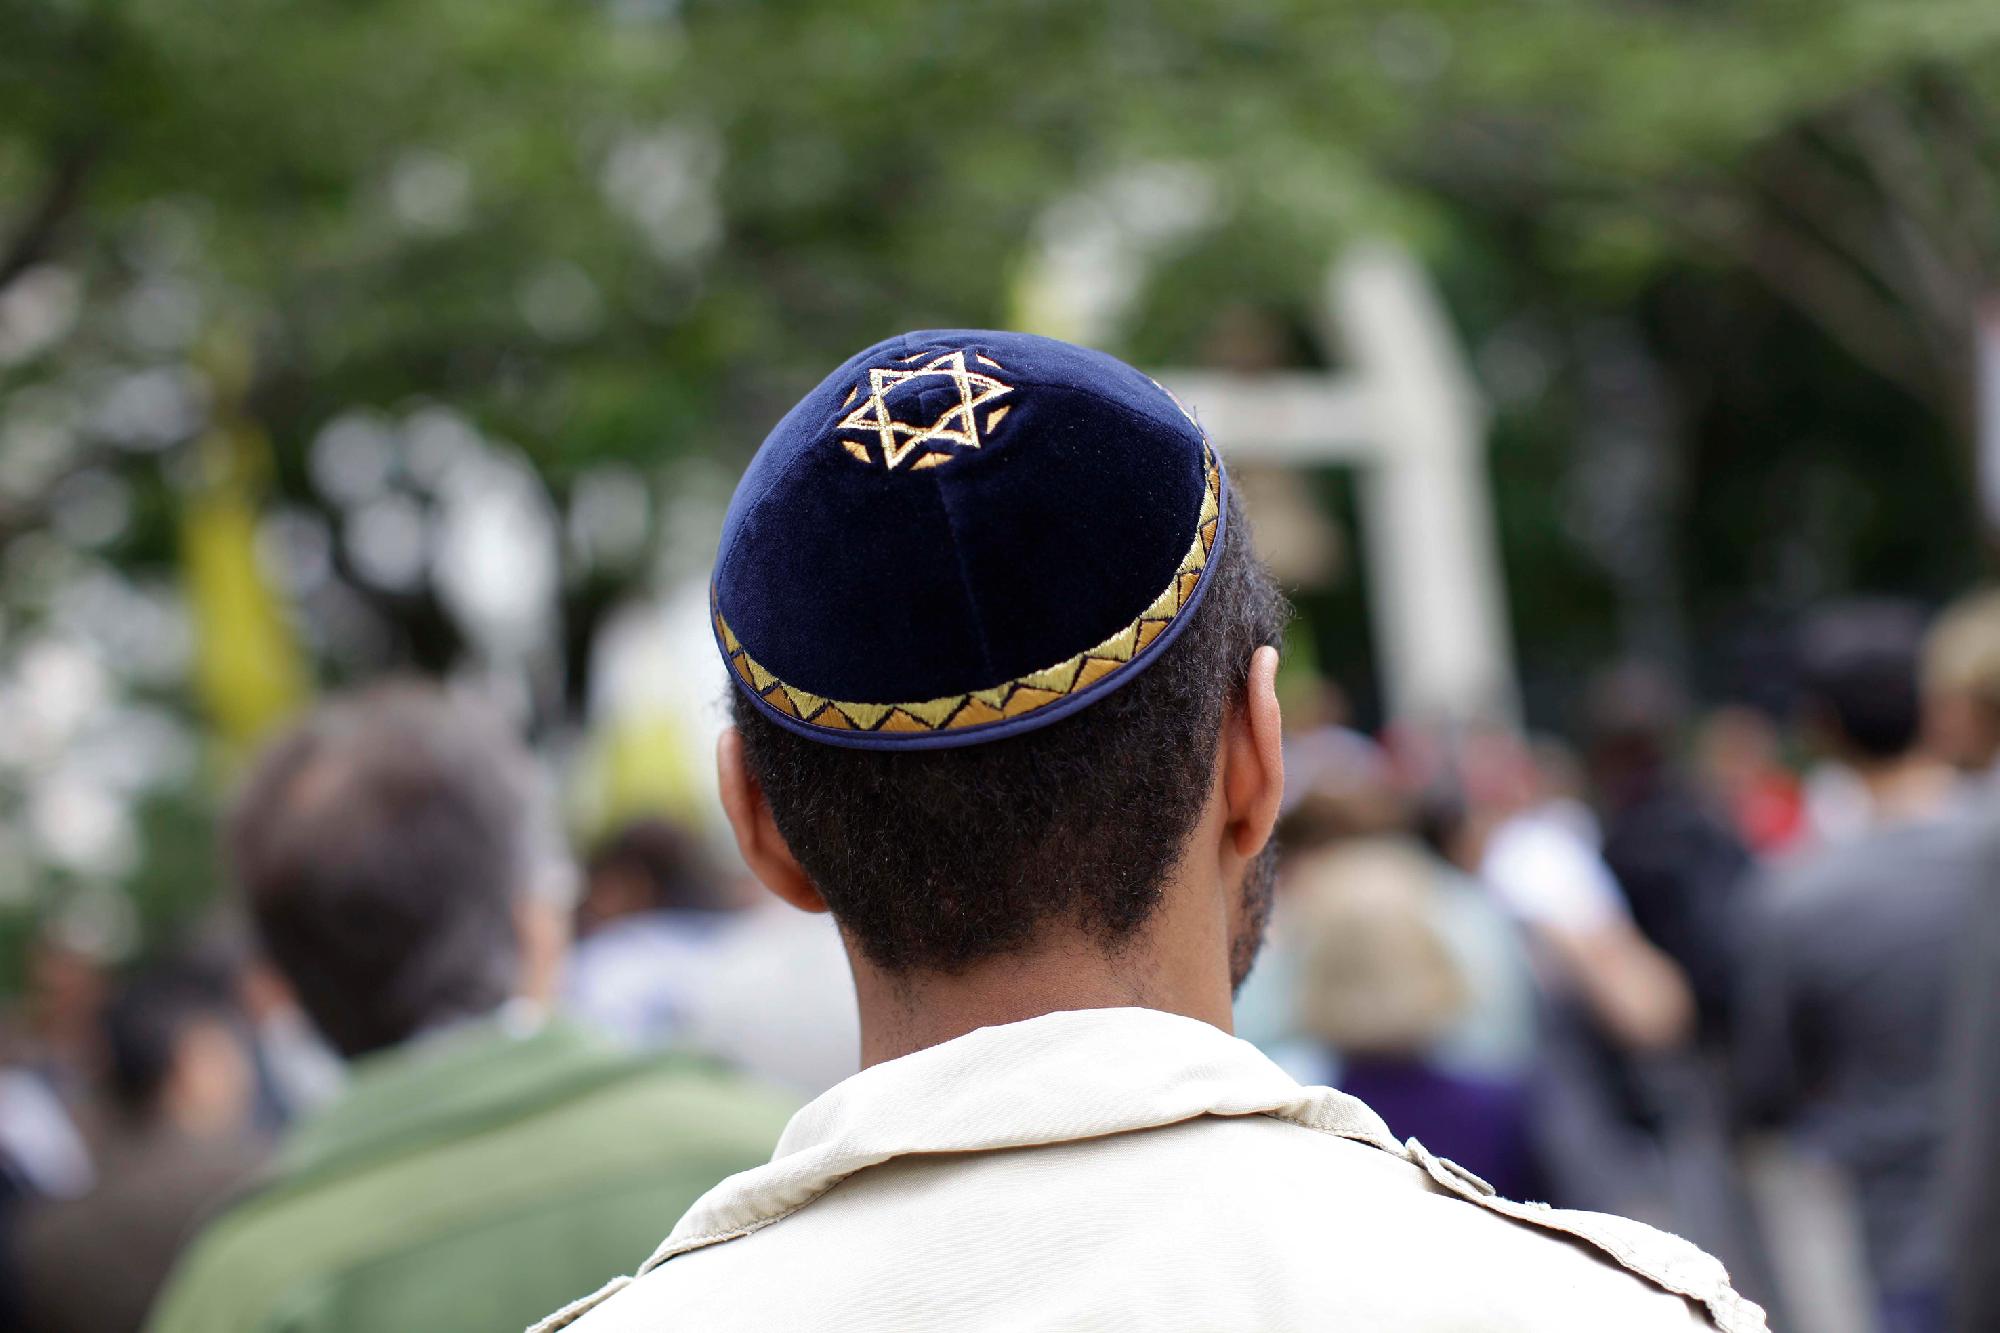 Hollandiában nőtt az antiszemita incidensek száma